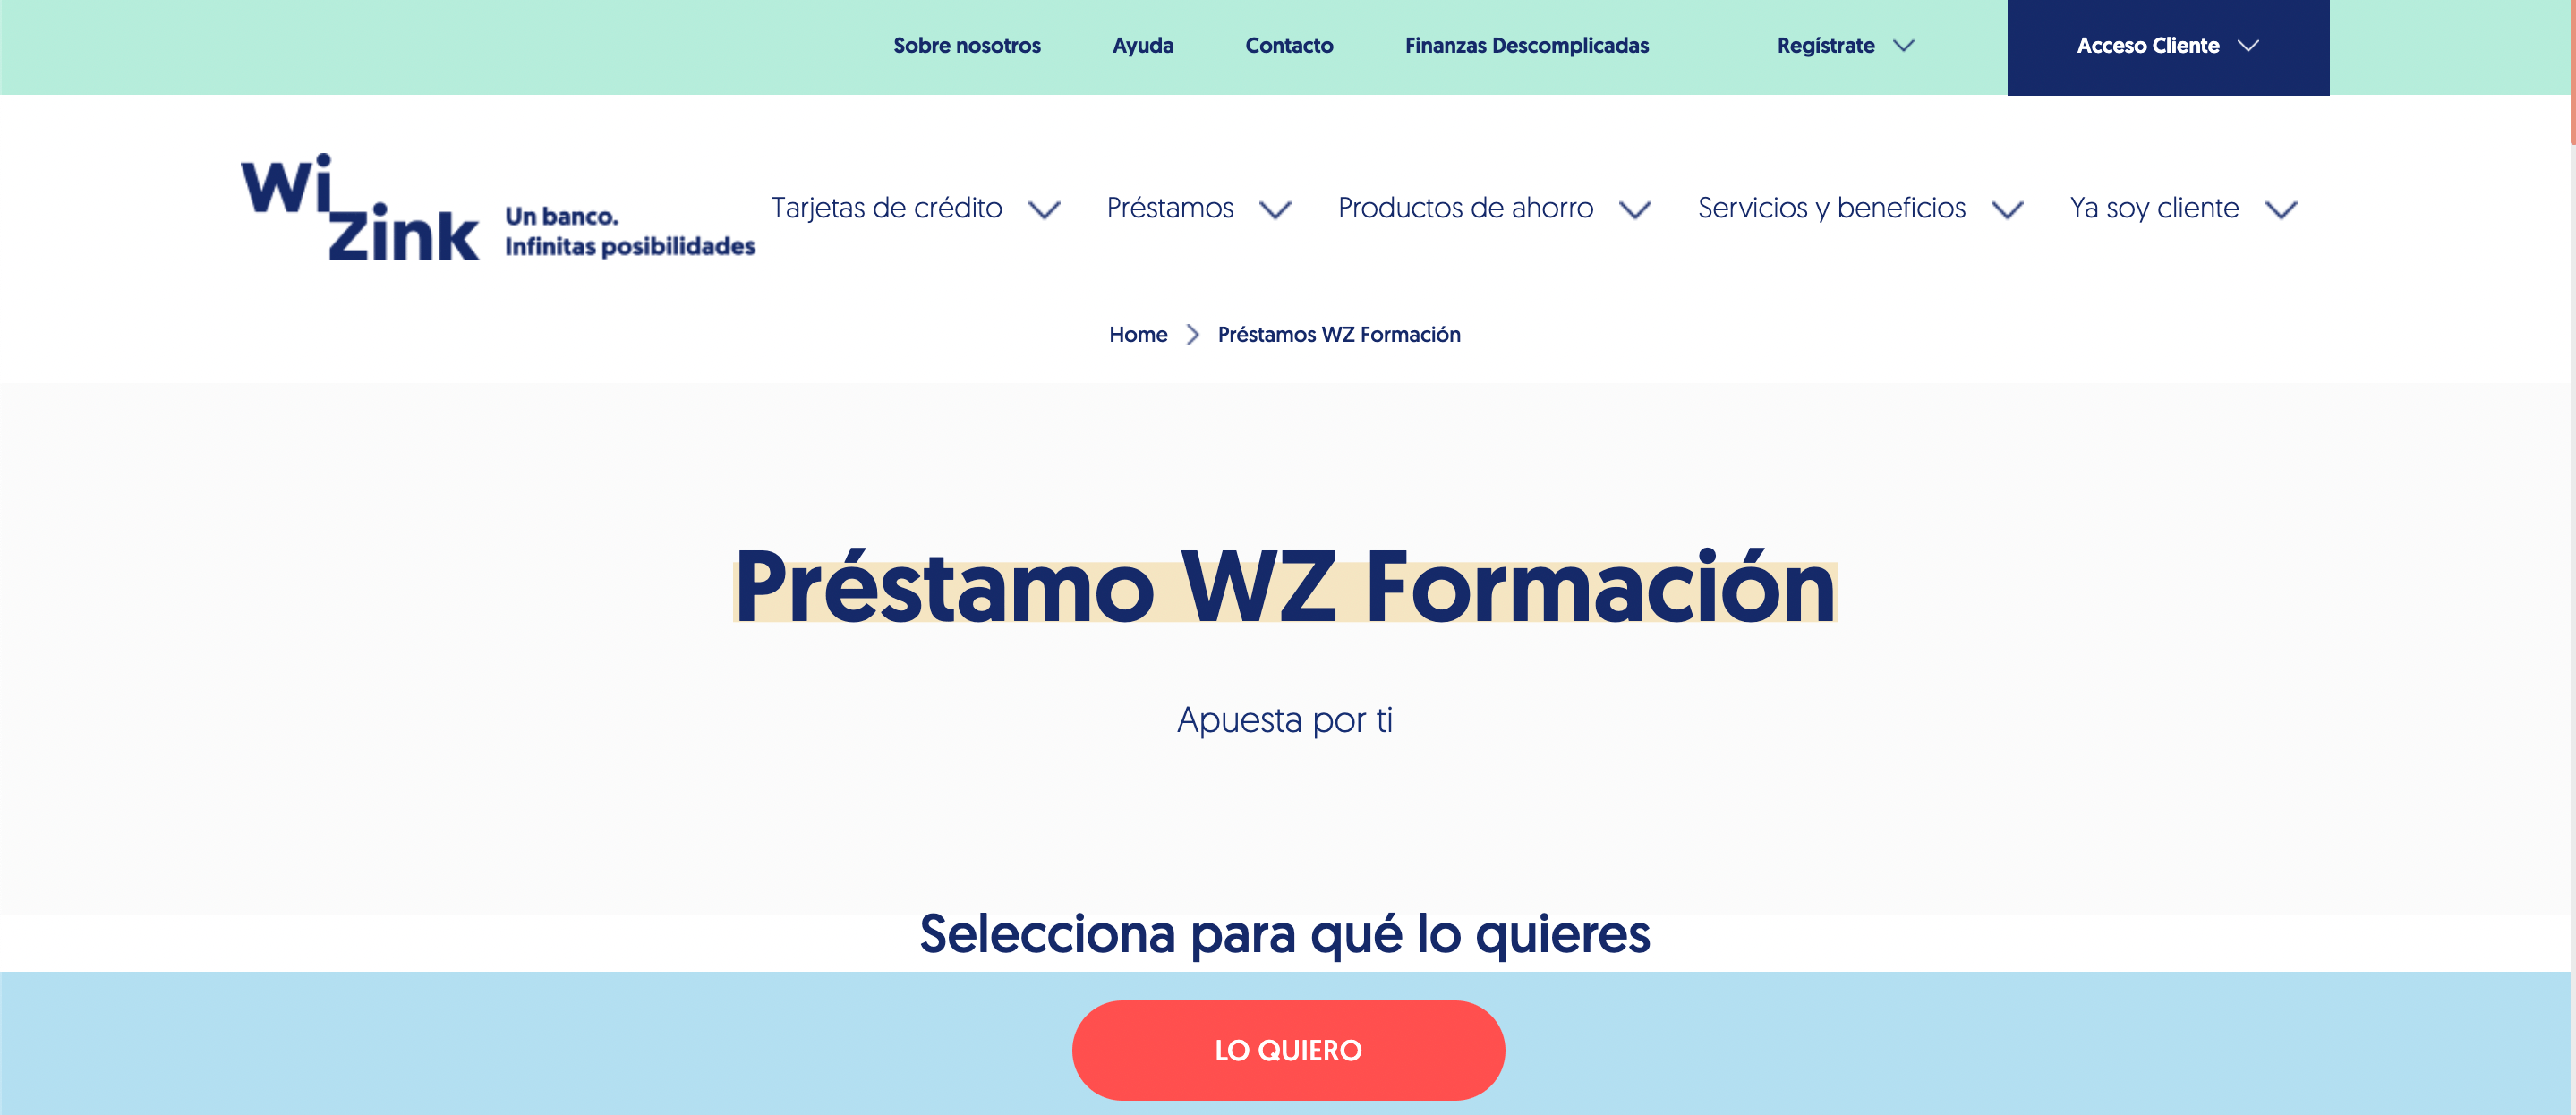 Wizink Préstamo WZ Formación hasta 30 000 €